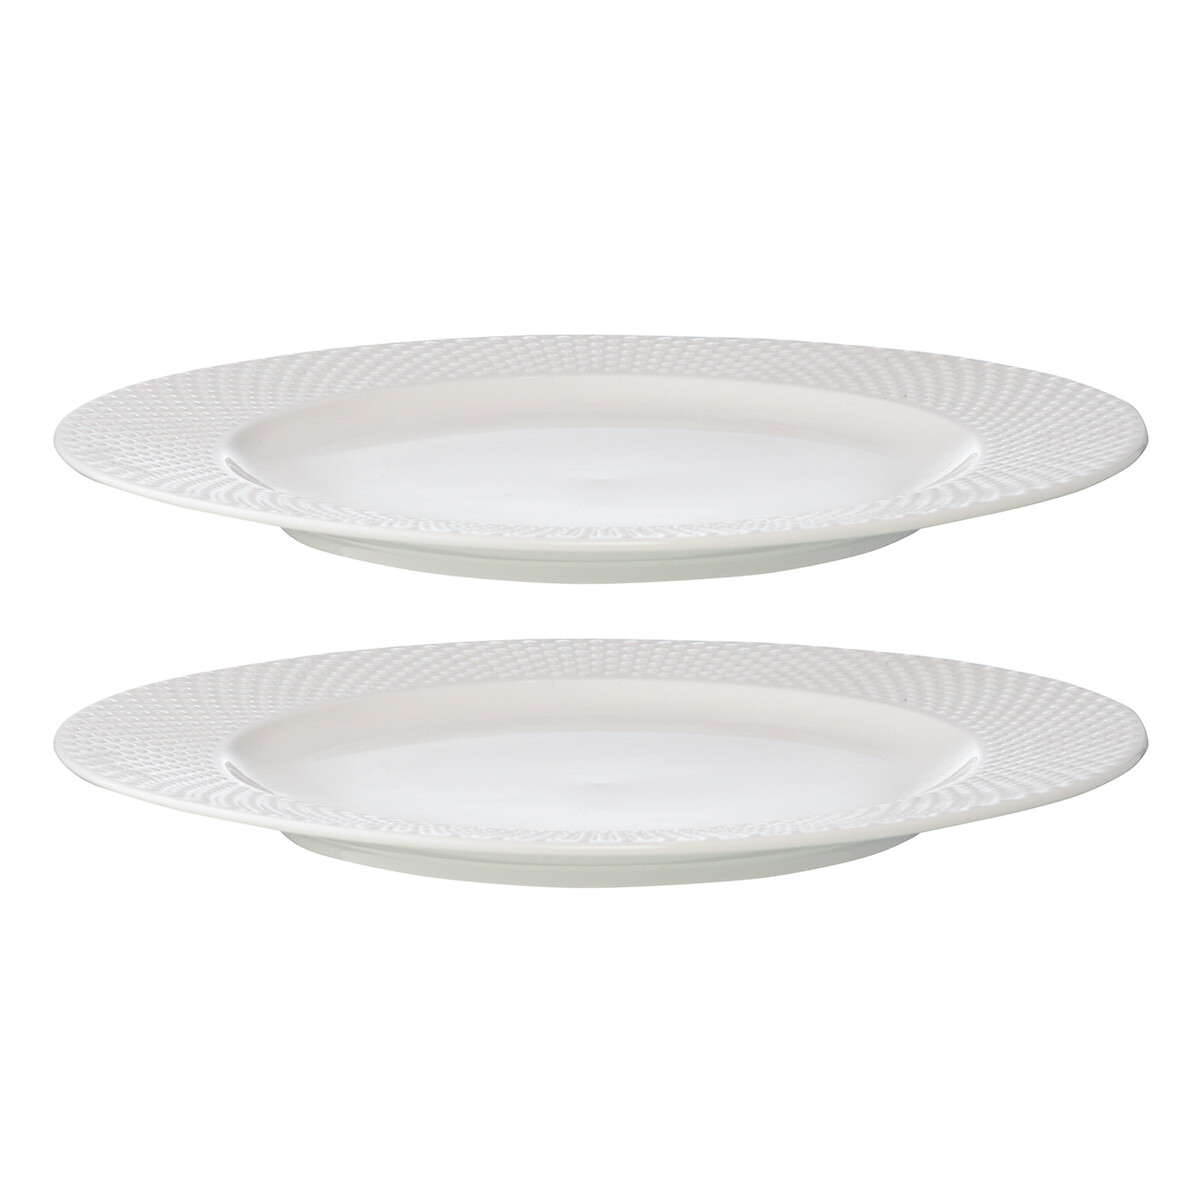 Набор из двух тарелок Essential 27см единый размер белый набор из двух тарелок essential 27см единый размер белый